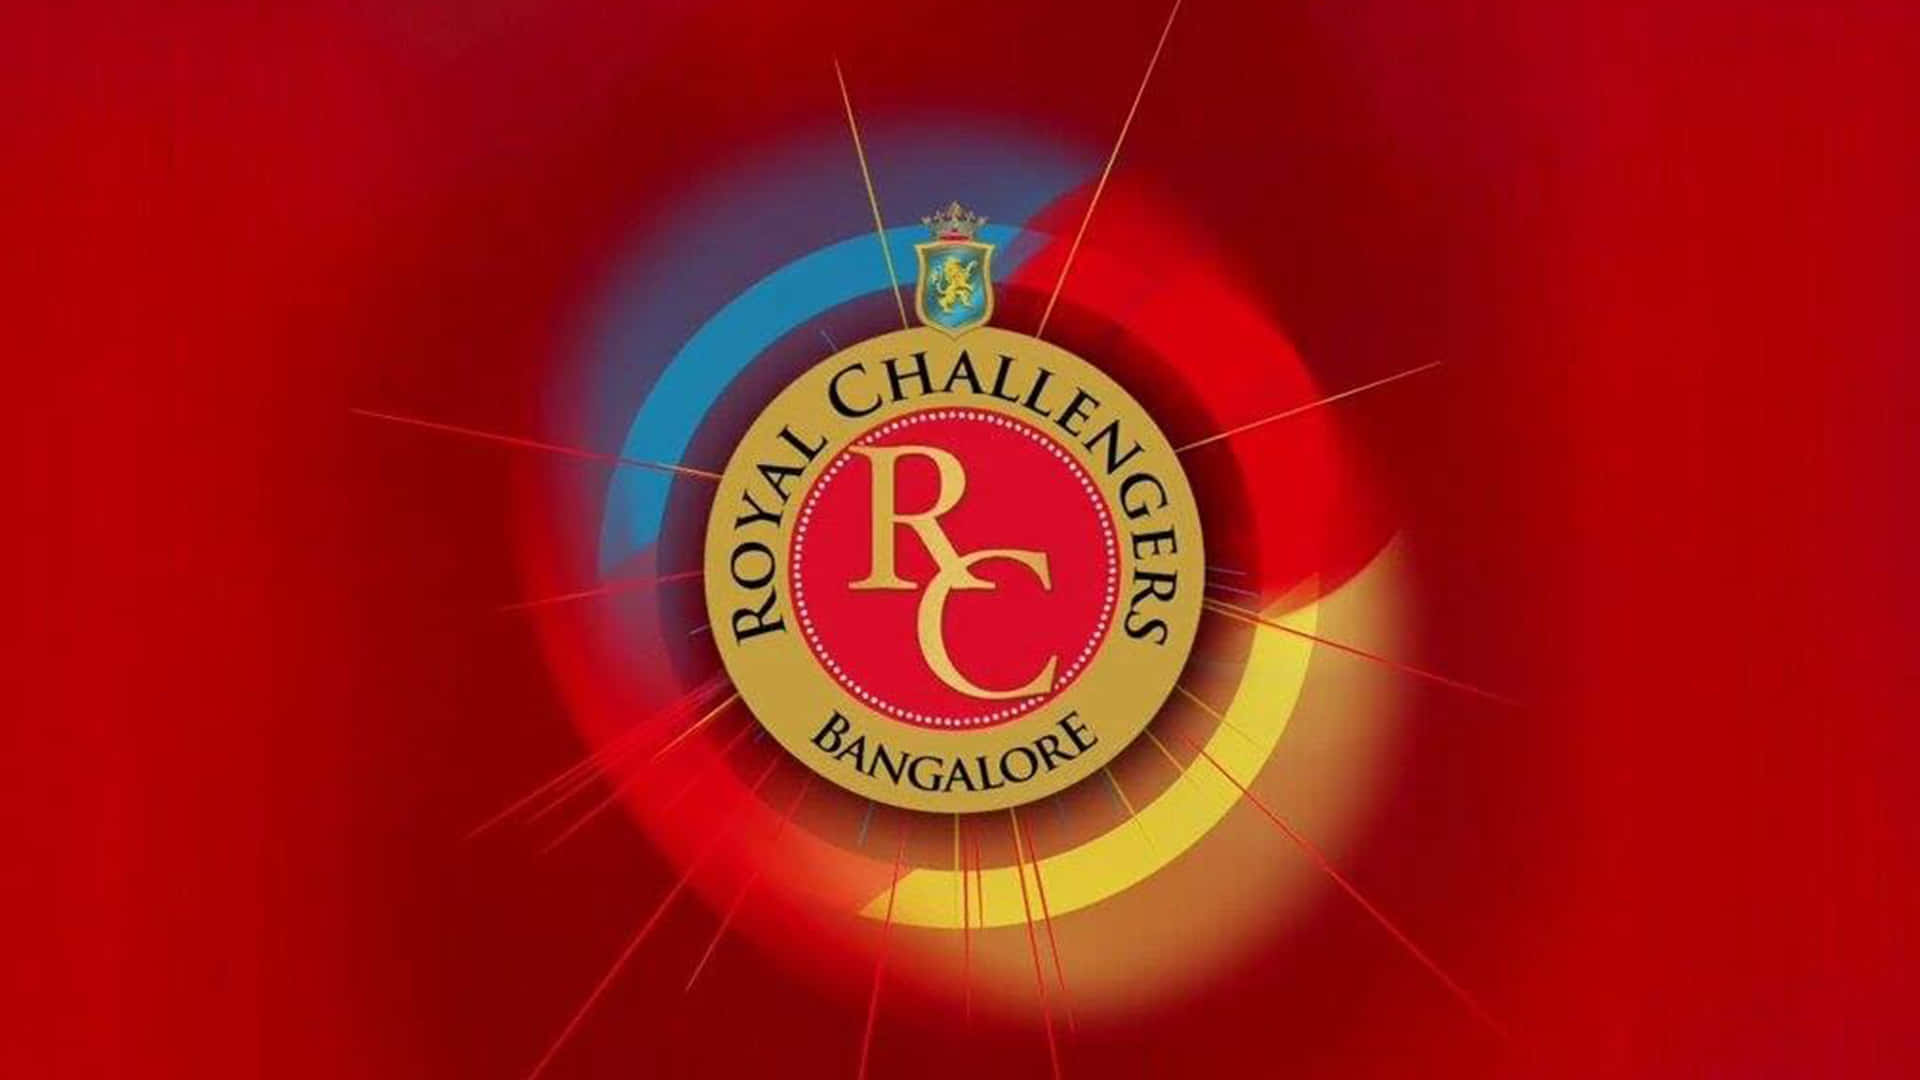 Royalchallengers Bangalore: Mästare Av Möjlighet